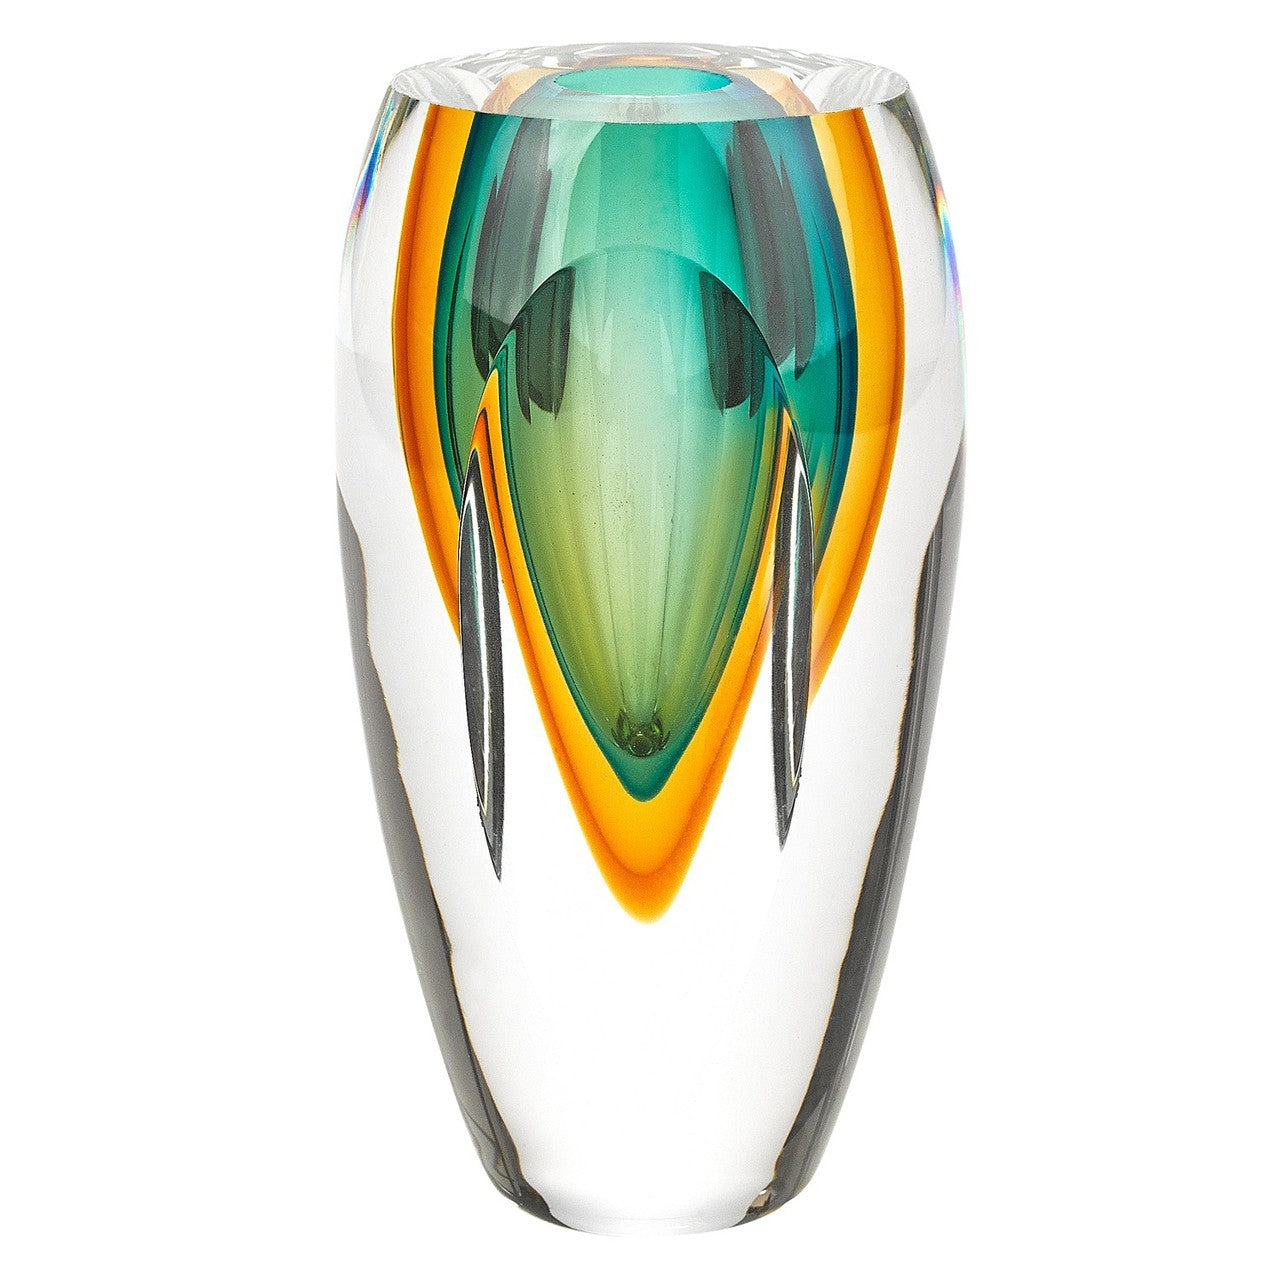 Rimini Art Glass 6.5 inches Vase